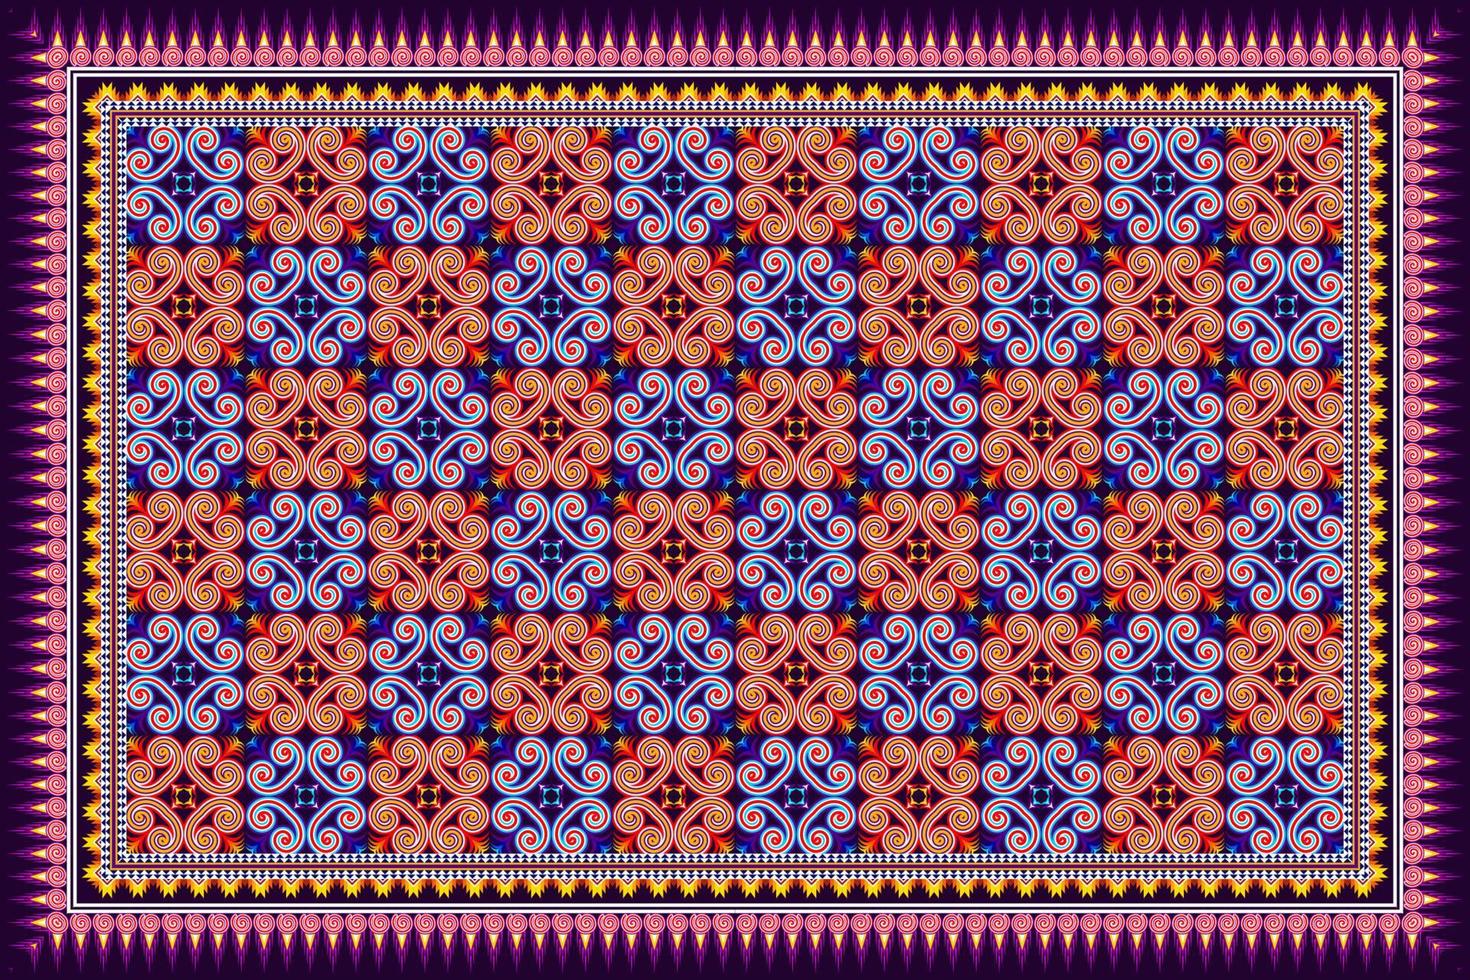 ikat étnicos sem costura padrão projeto abstratos geométricas asteca tecido tapete ornamento chevron têxtil decoração wallpaper. vetor de bordado tradicional americano índio africano peru tribal